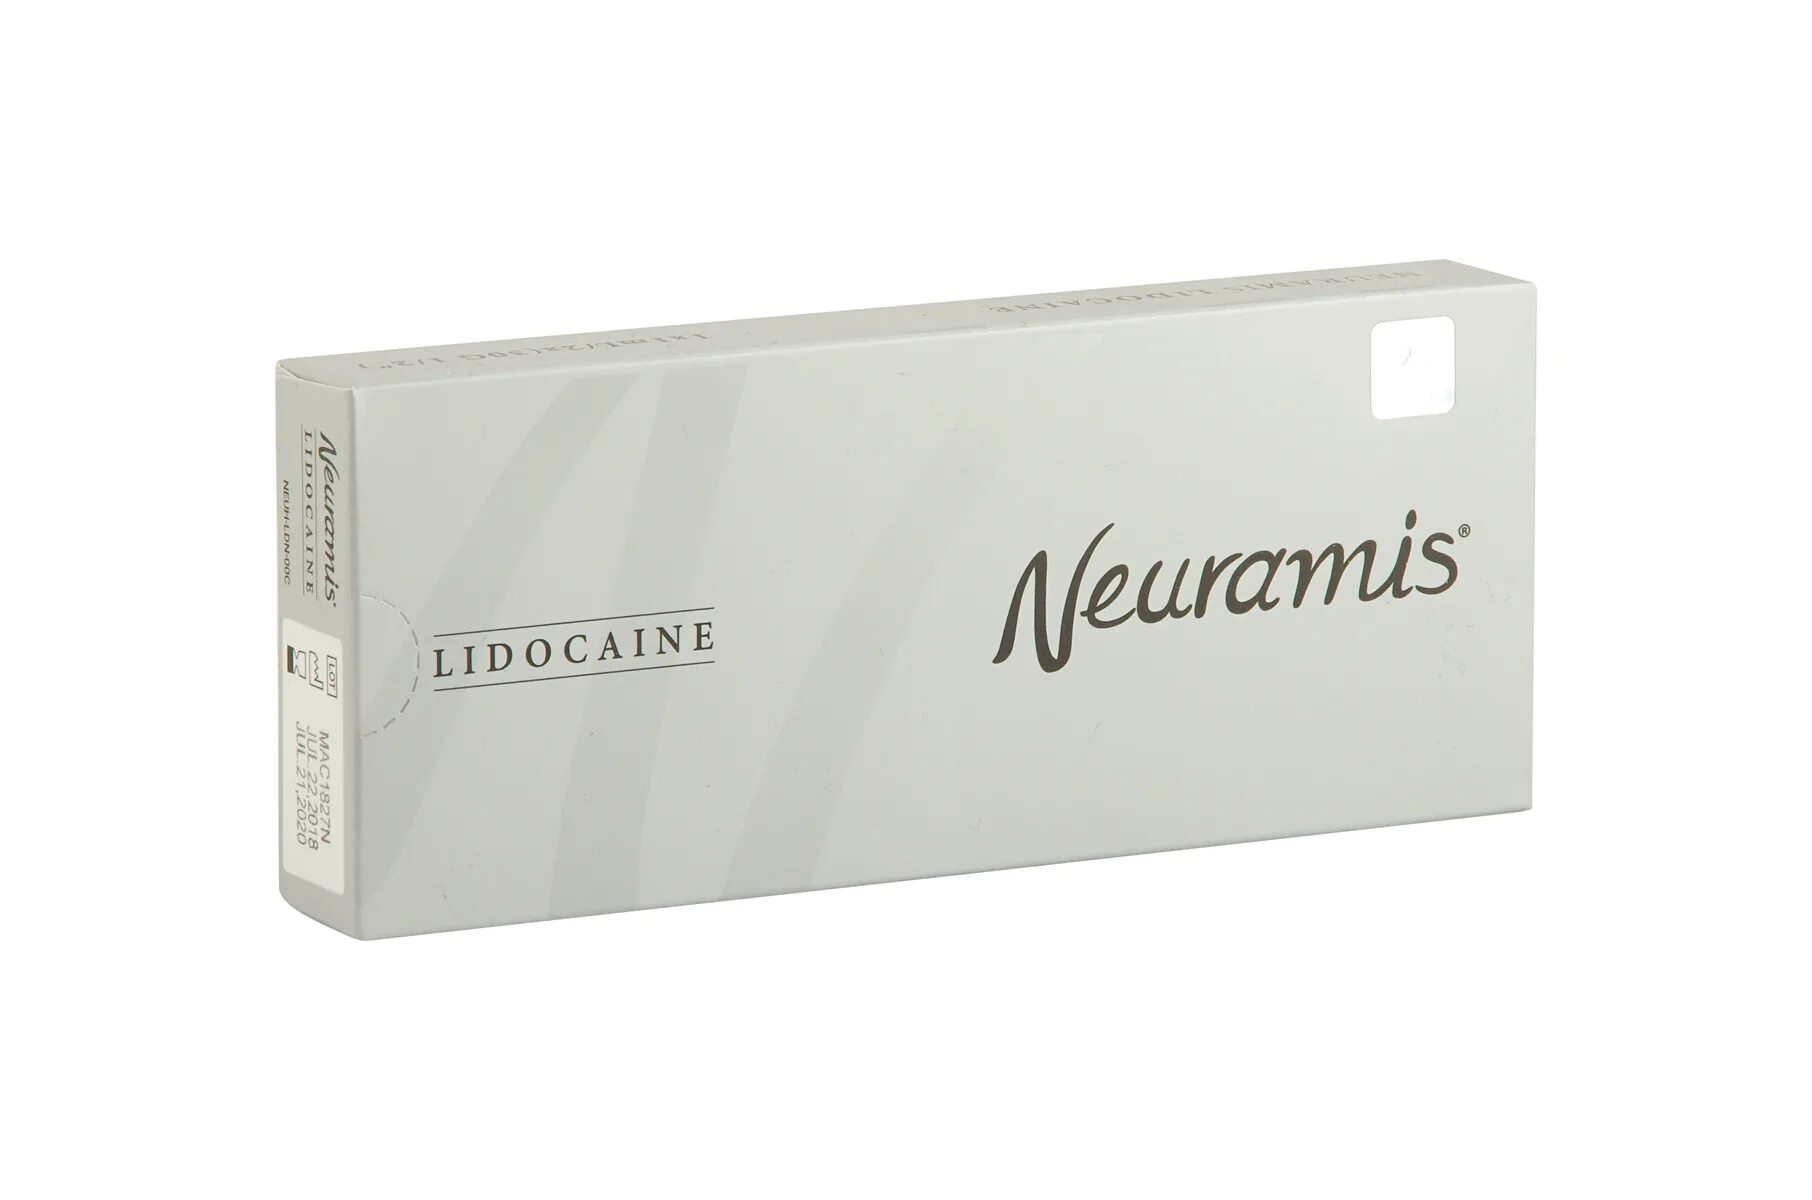 Neuramis филлер. Нейрамис 1 мл. Нейрамис дип. 1 Мл Neuramis Deep ledocaine.